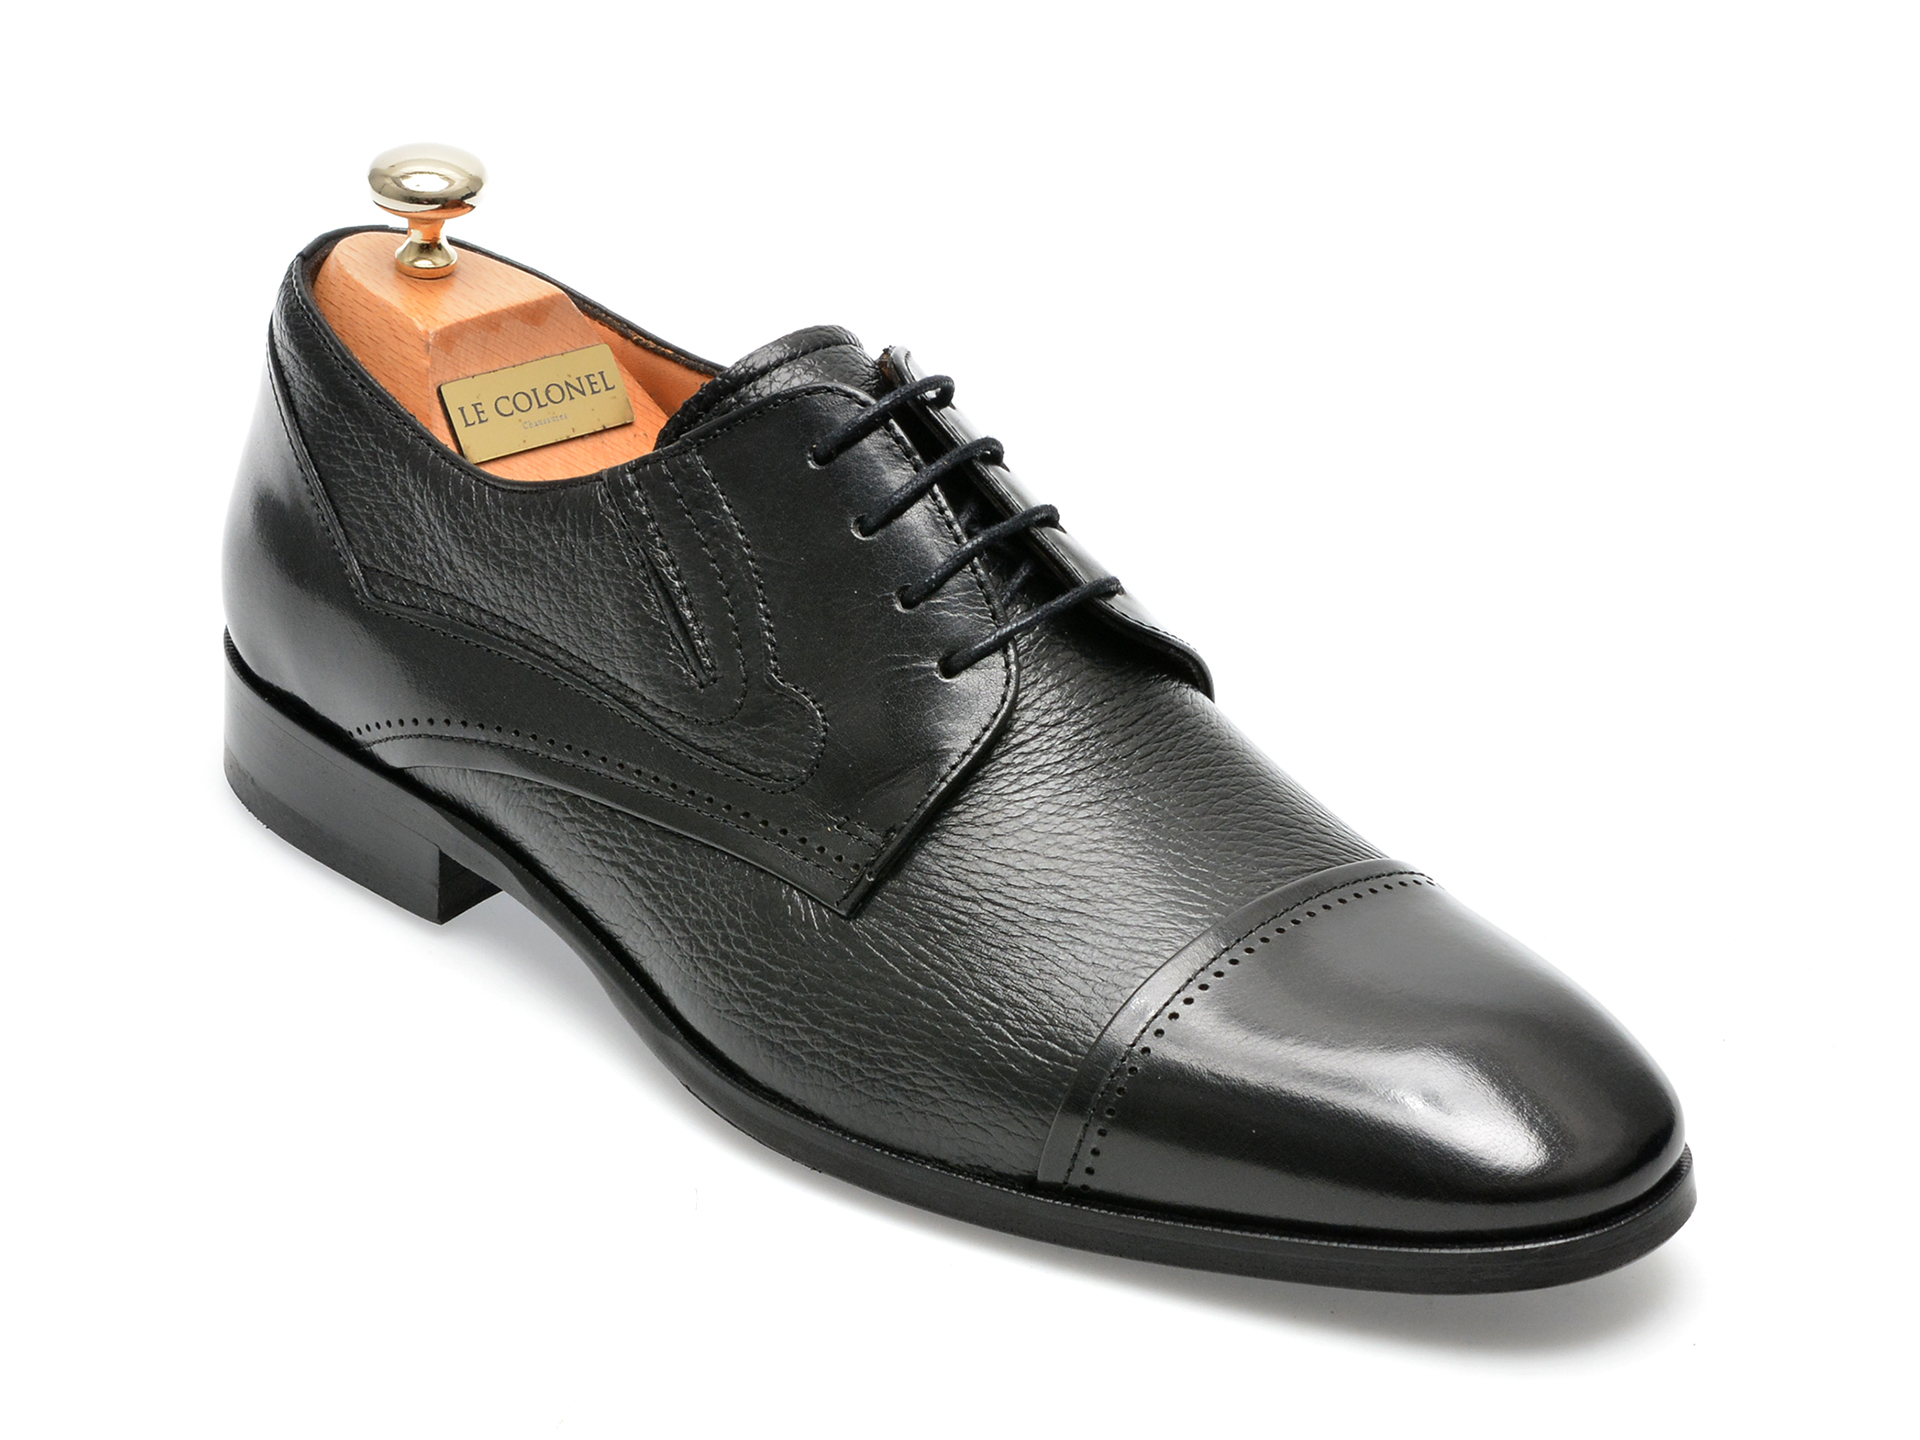 Pantofi LE COLONEL negri, 48764, din piele naturala Le Colonel